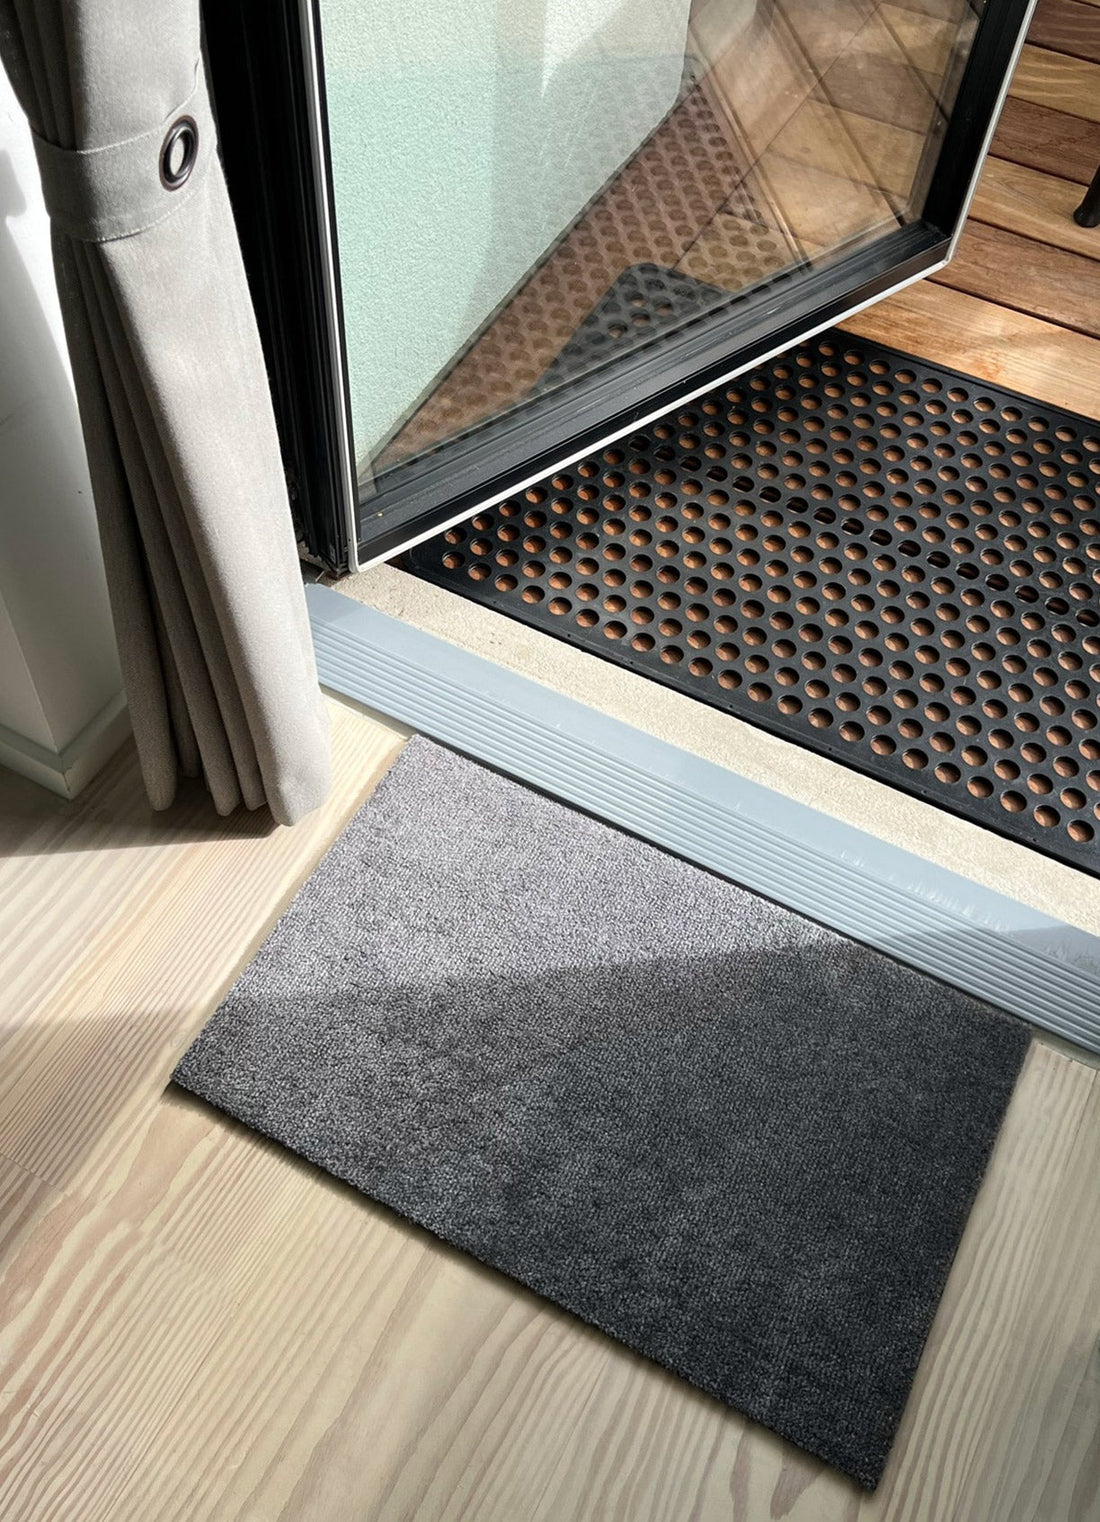 Floor mat 40 x 60 cm - Uni Color/Steelgrey